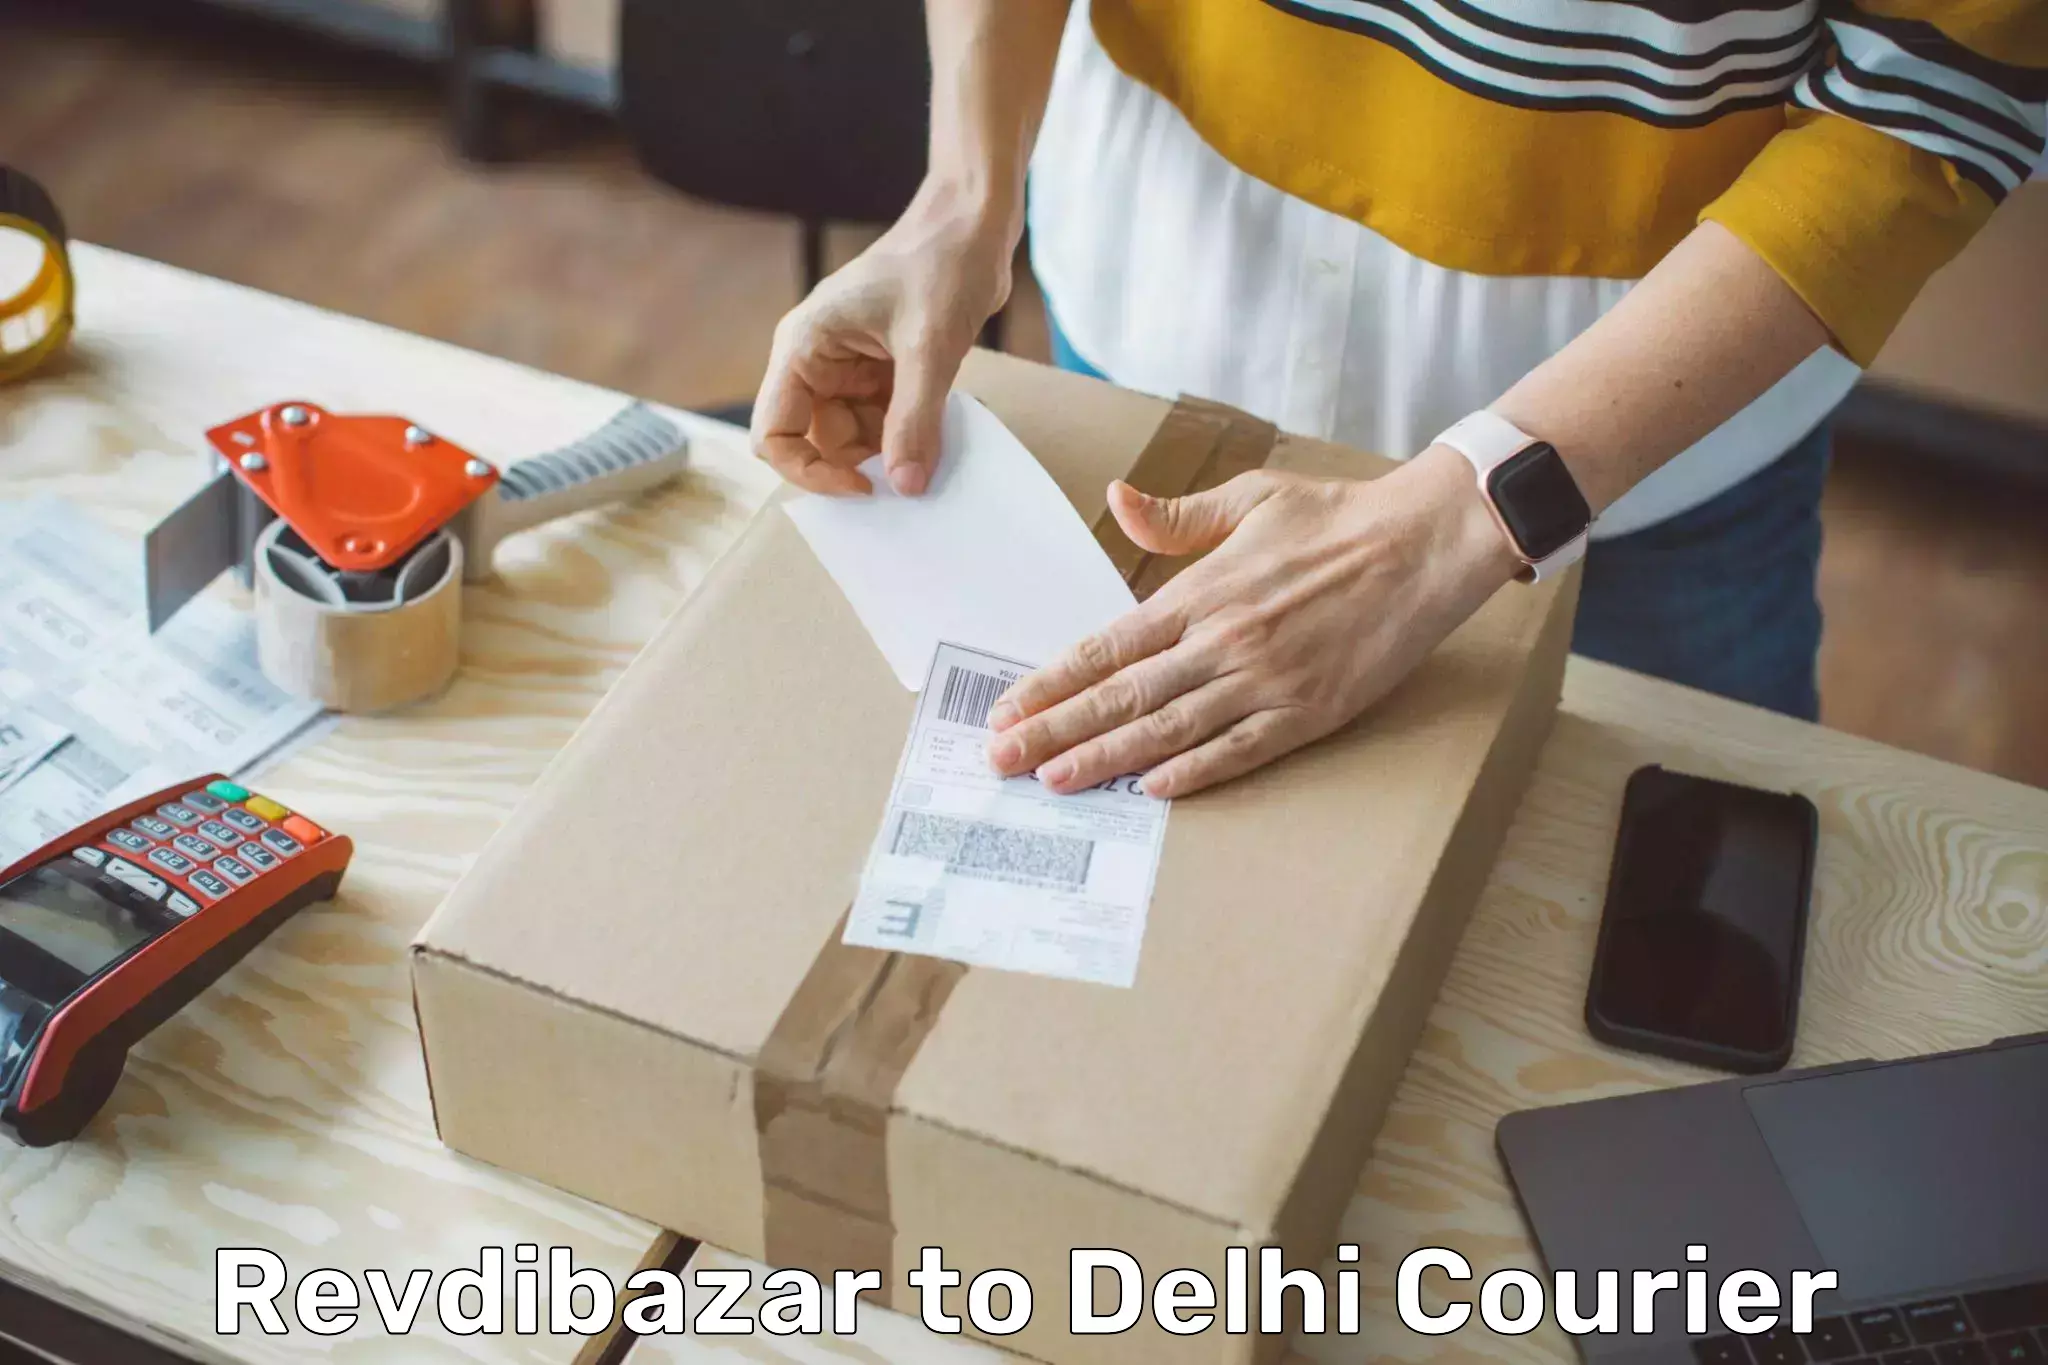 Cash on delivery service Revdibazar to Kalkaji